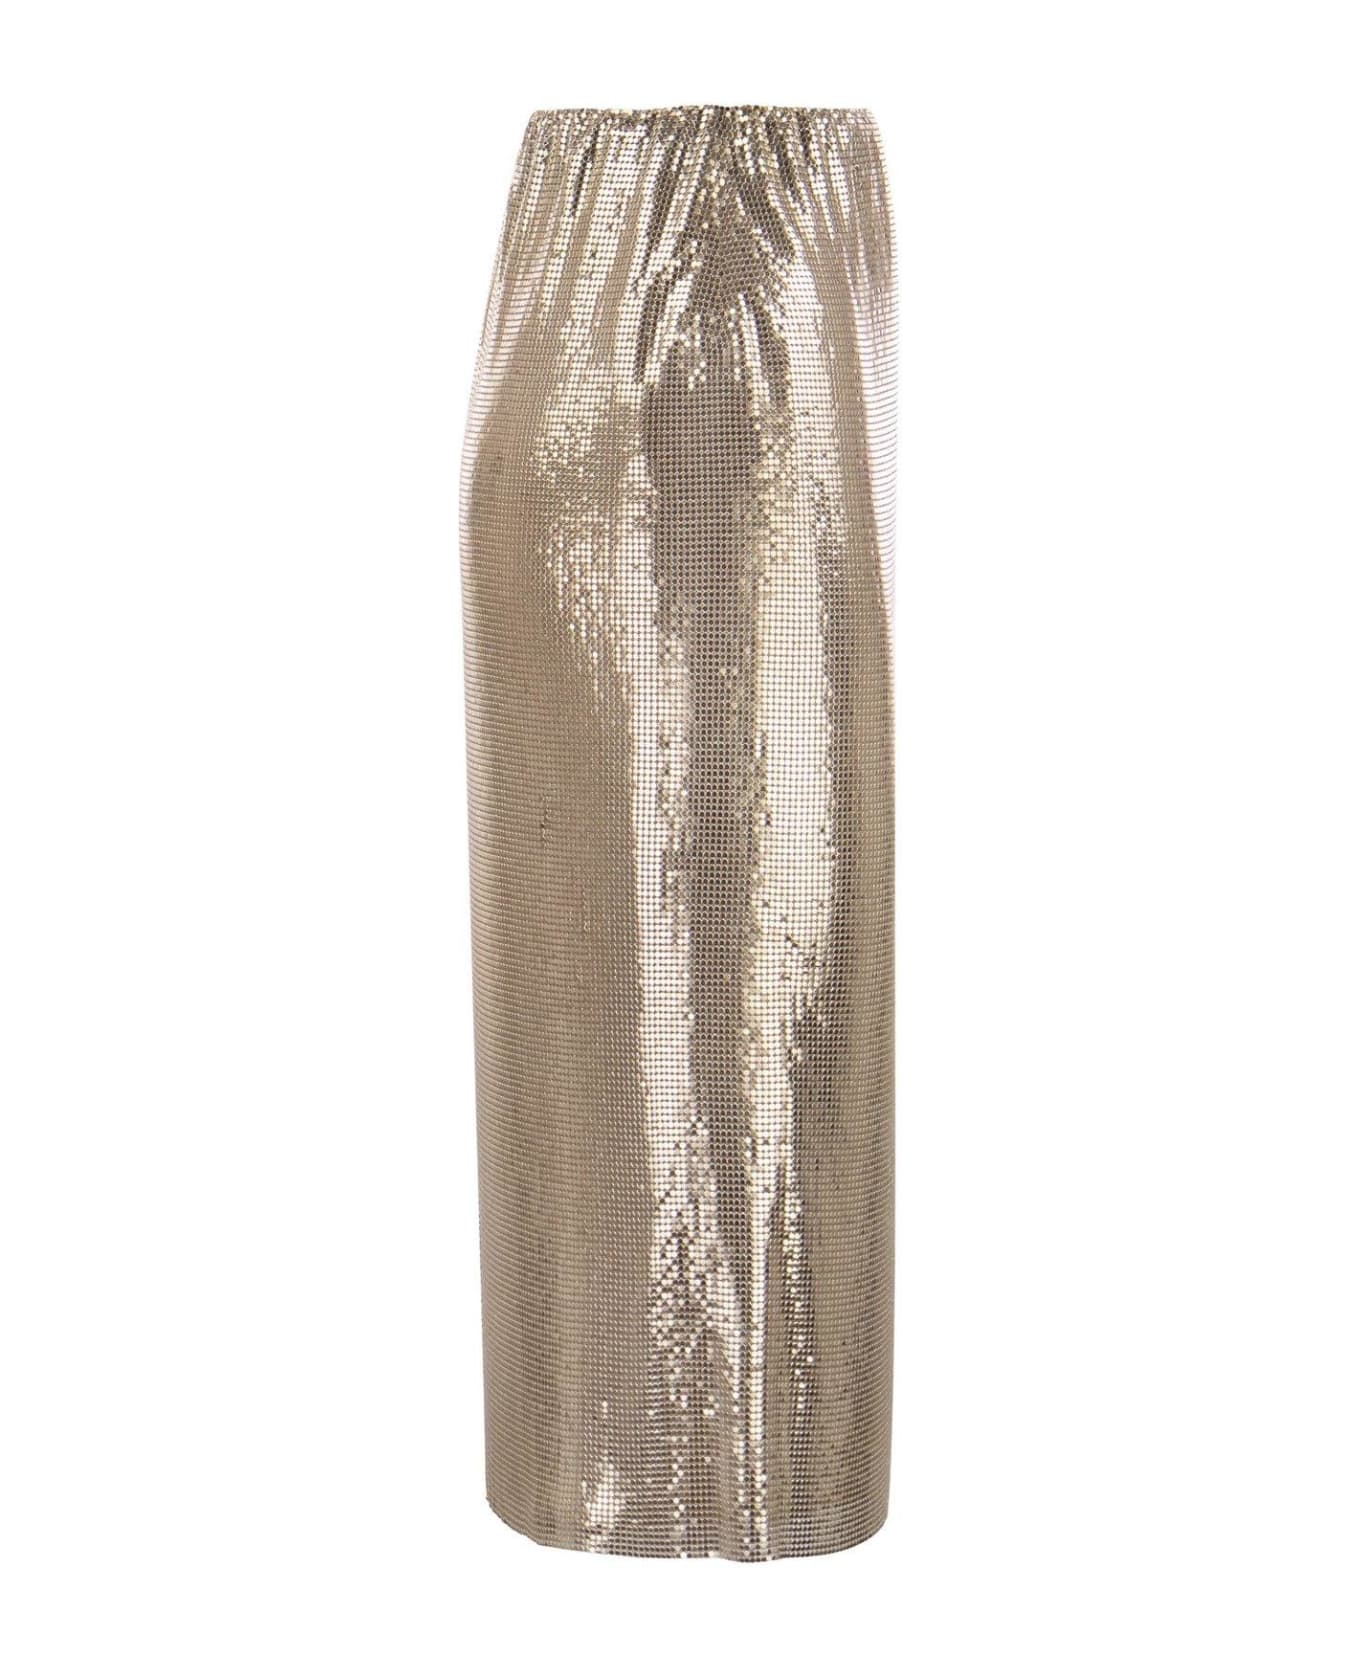 SportMax Embellished High Waist Skirt - Golden